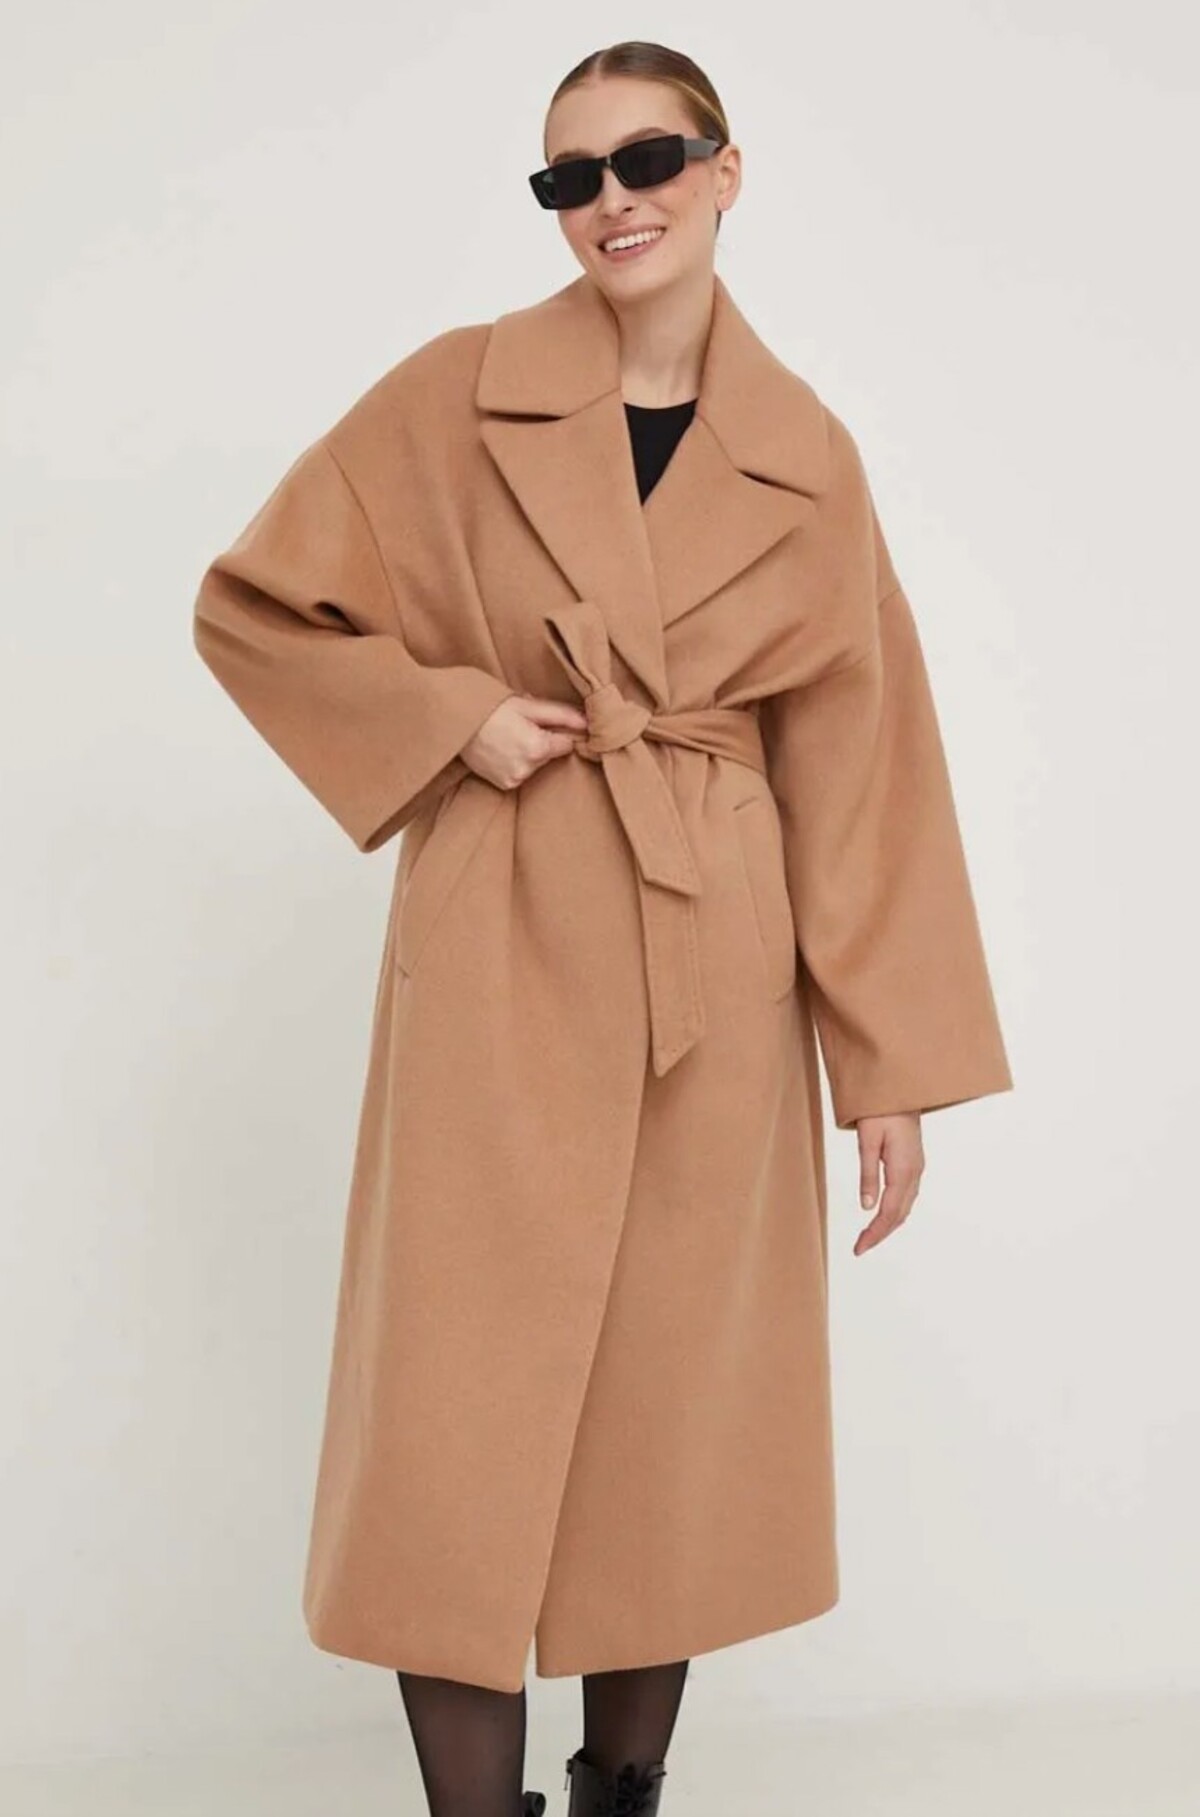 Tento vlnený kabát od značky Answear Lab ťa zaujme hnedou farbou, oversize strihom a opaskom, ktorý mu dodáva lákavú asymetriu. Konkrétny model na fotke kúpiš za 83,90 eura.